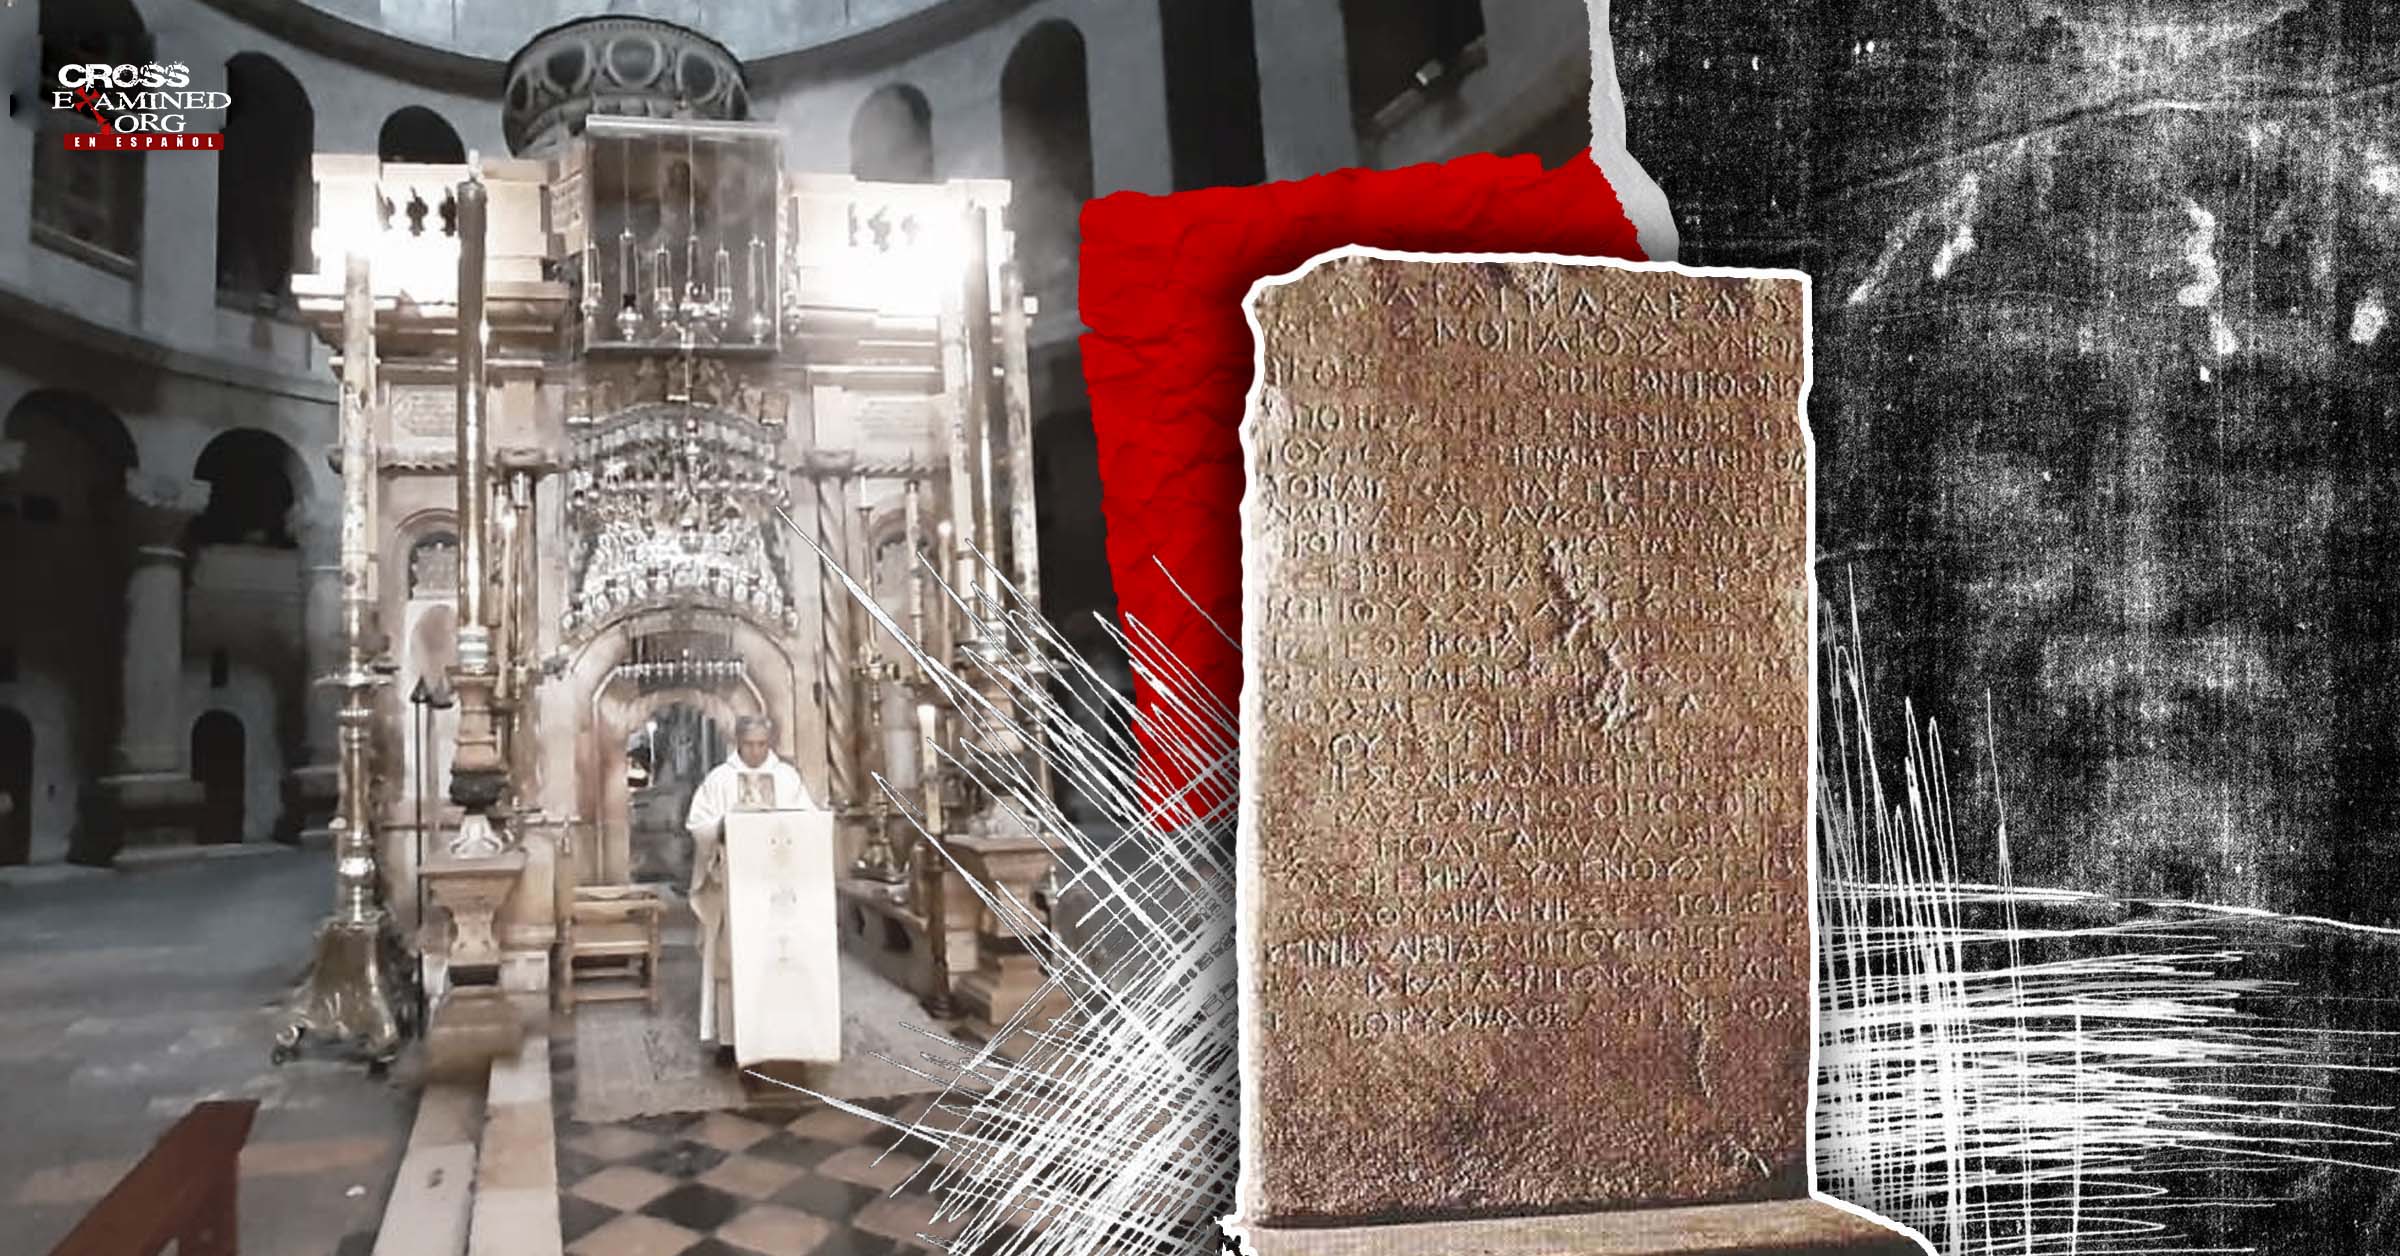 Serie Defensa de la Resurrección: Evidencias arqueológicas que apoyan la Resurrección